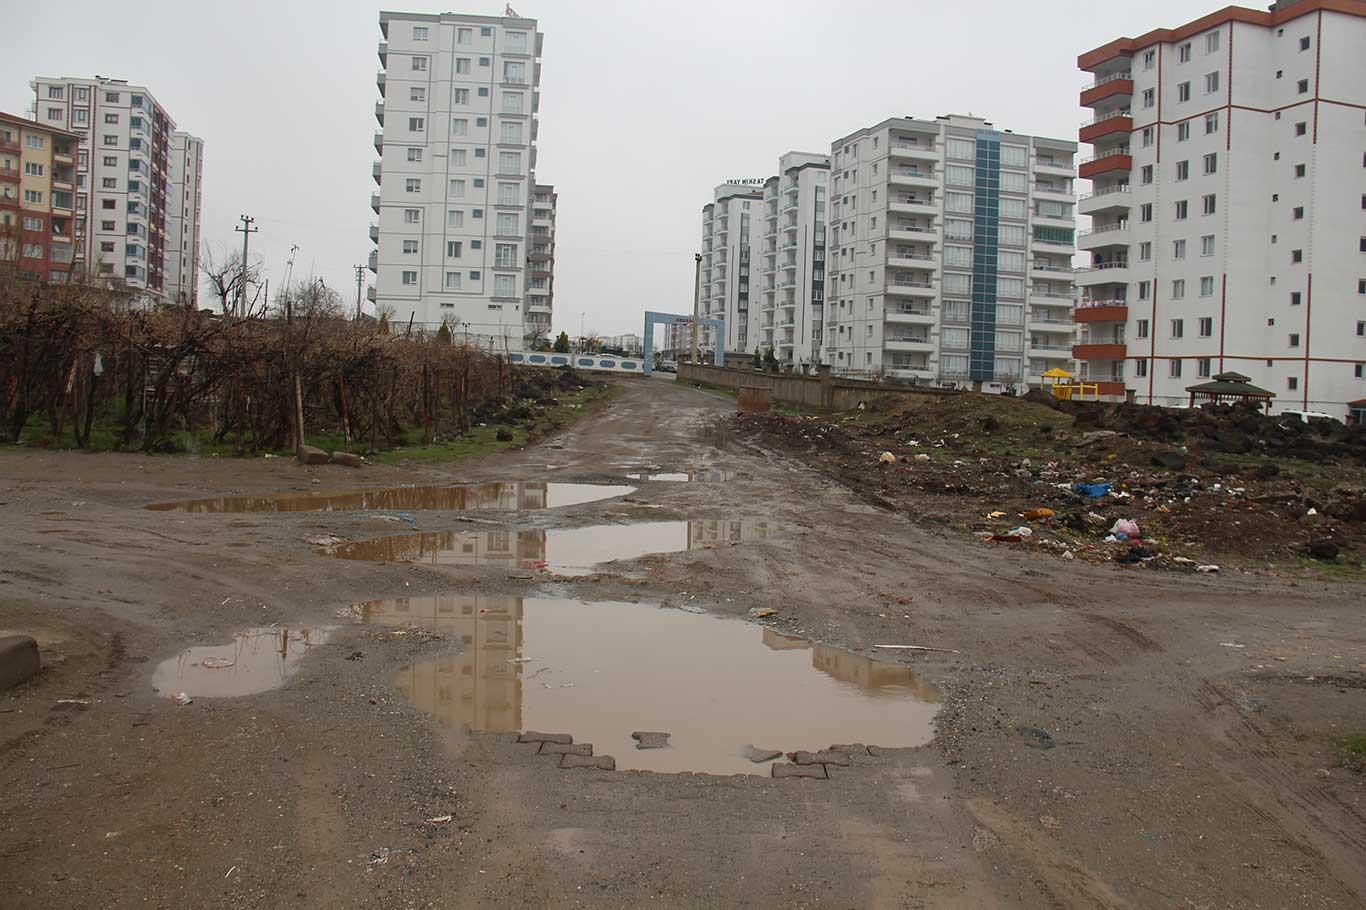 Diyarbakır 500 Evler sakinleri: Mahallemizin en önemli sorunu yolların çukurlu olmasıdır